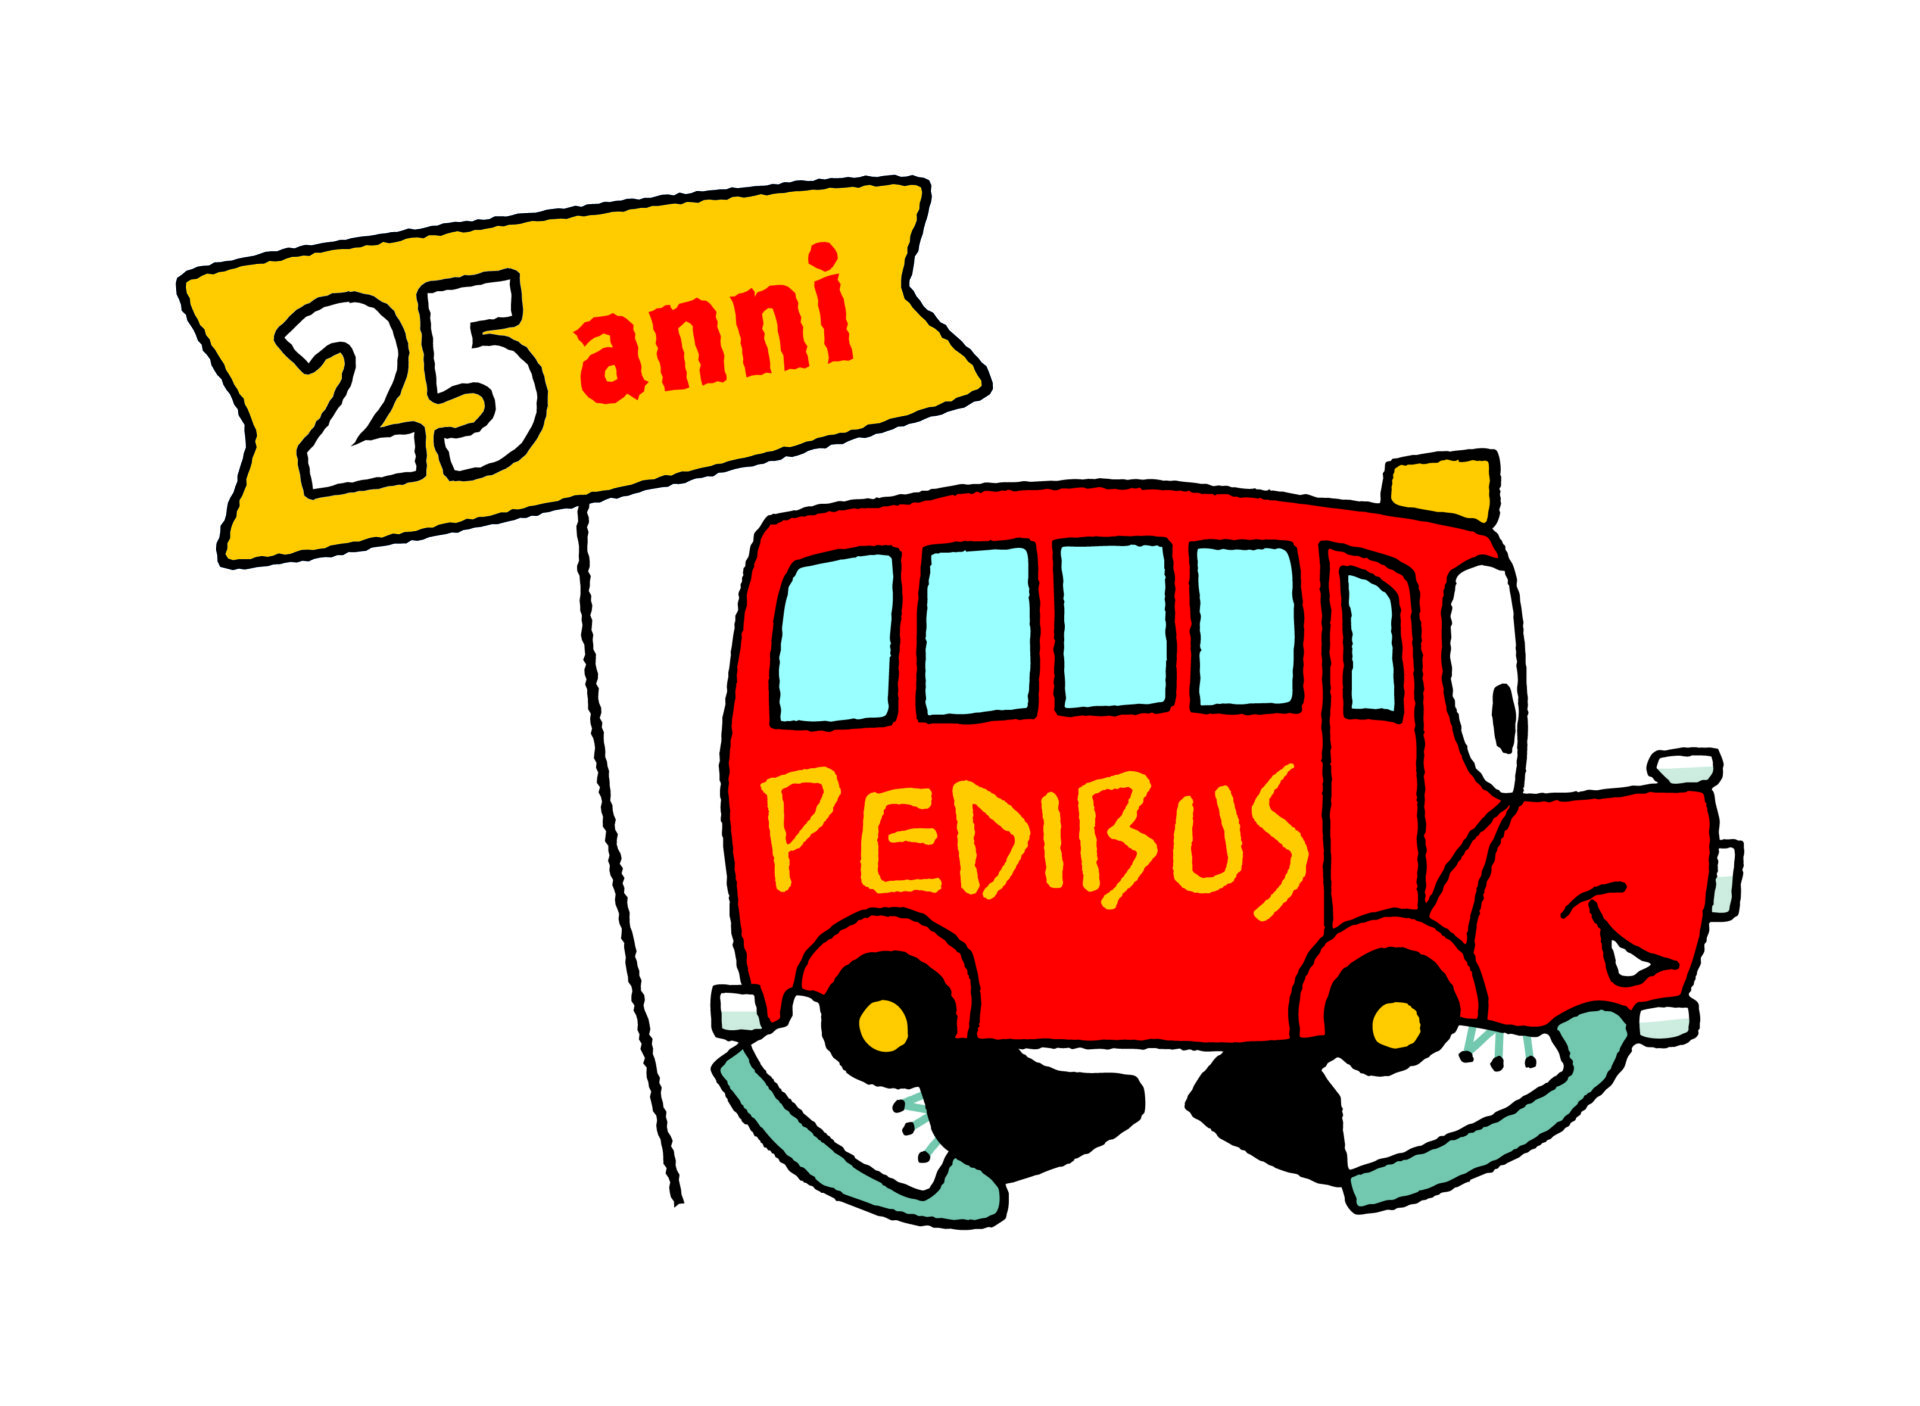 Celebriamo 25 anni di Pedibus!